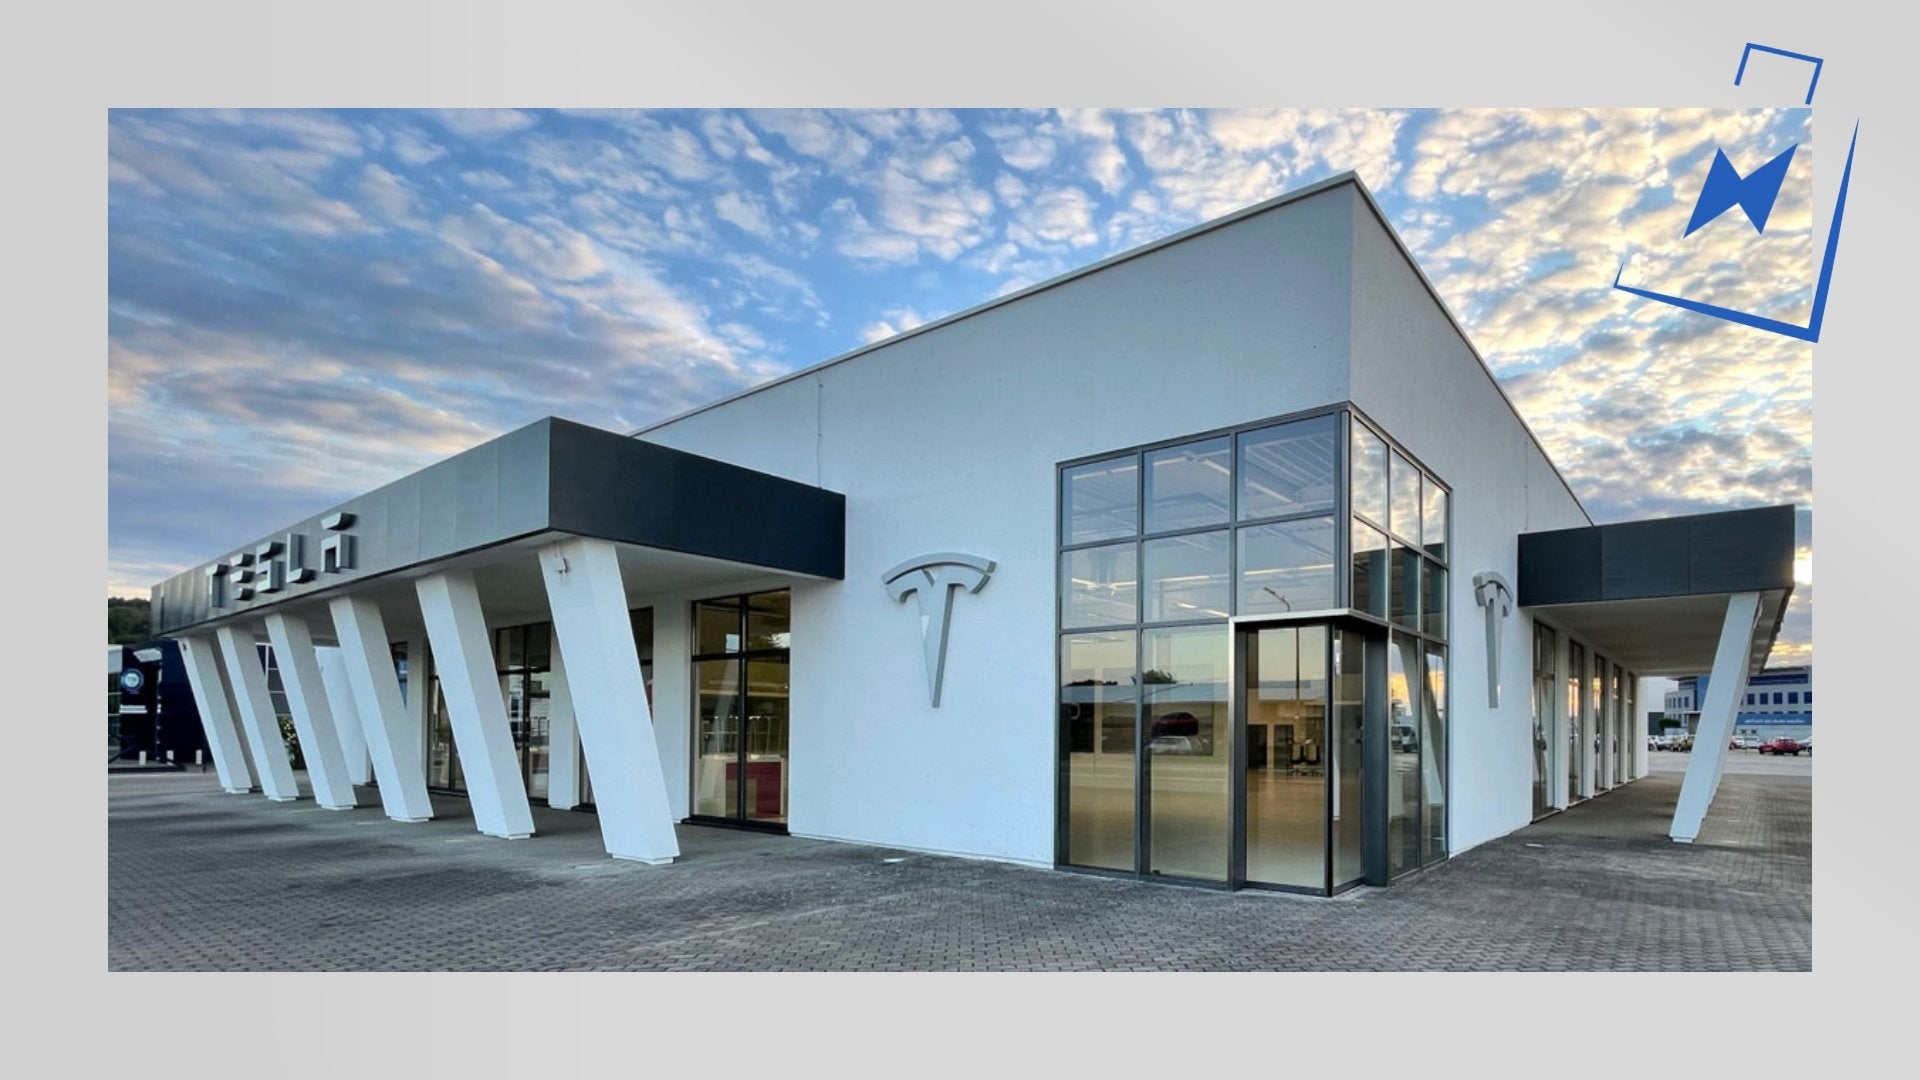 Tesla eröffnet neues Service- und Delivery-Center bei Koblenz! Bereits die achte Neueröffnung dieses Jahr. - Shop4Tesla